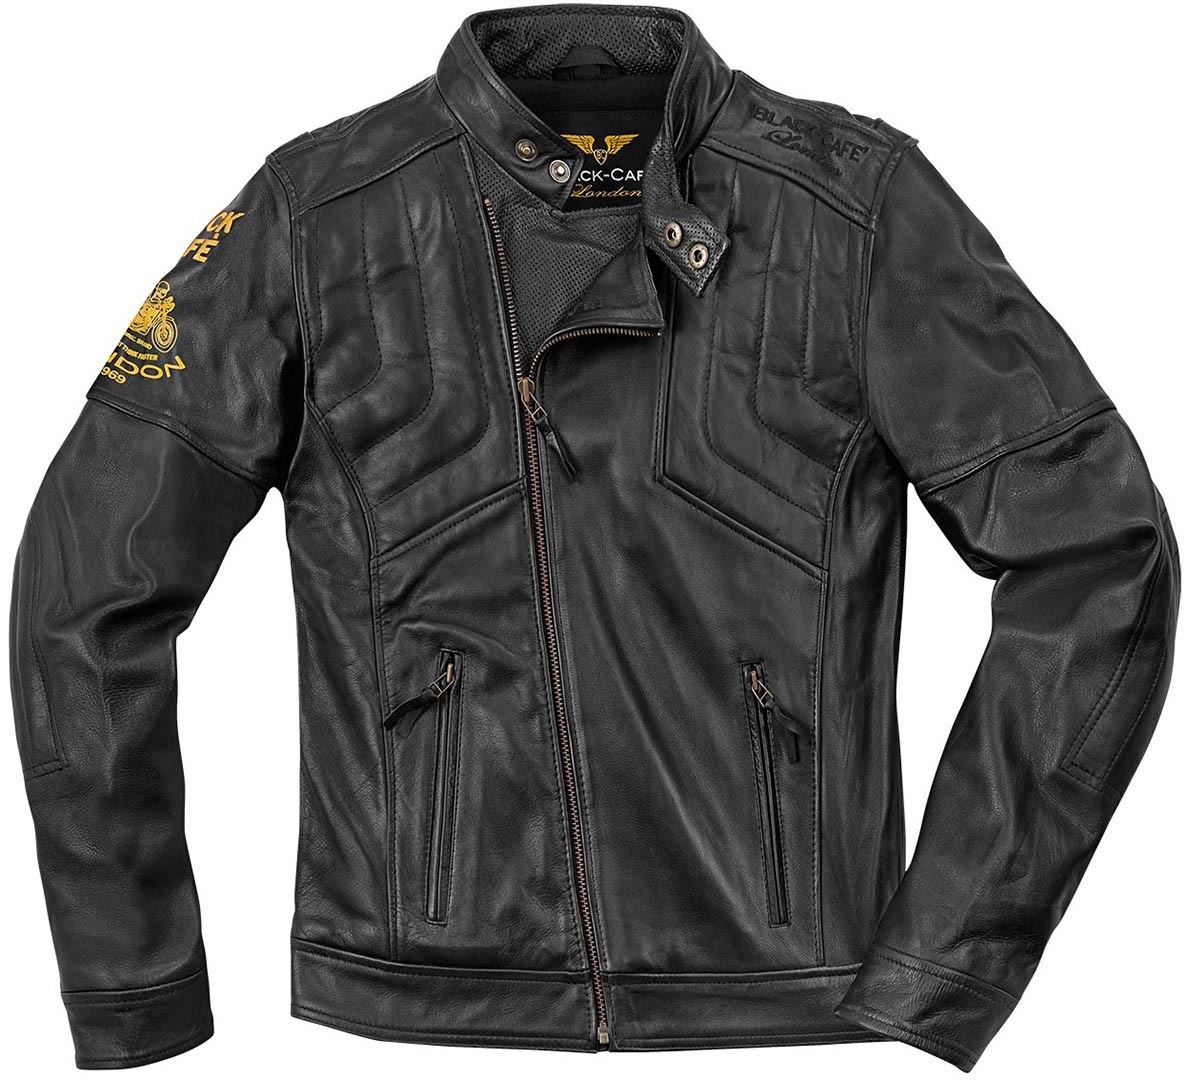 Black-Cafe London Sari Motorcycle Leather Jacket, Size 52, black, Size 52